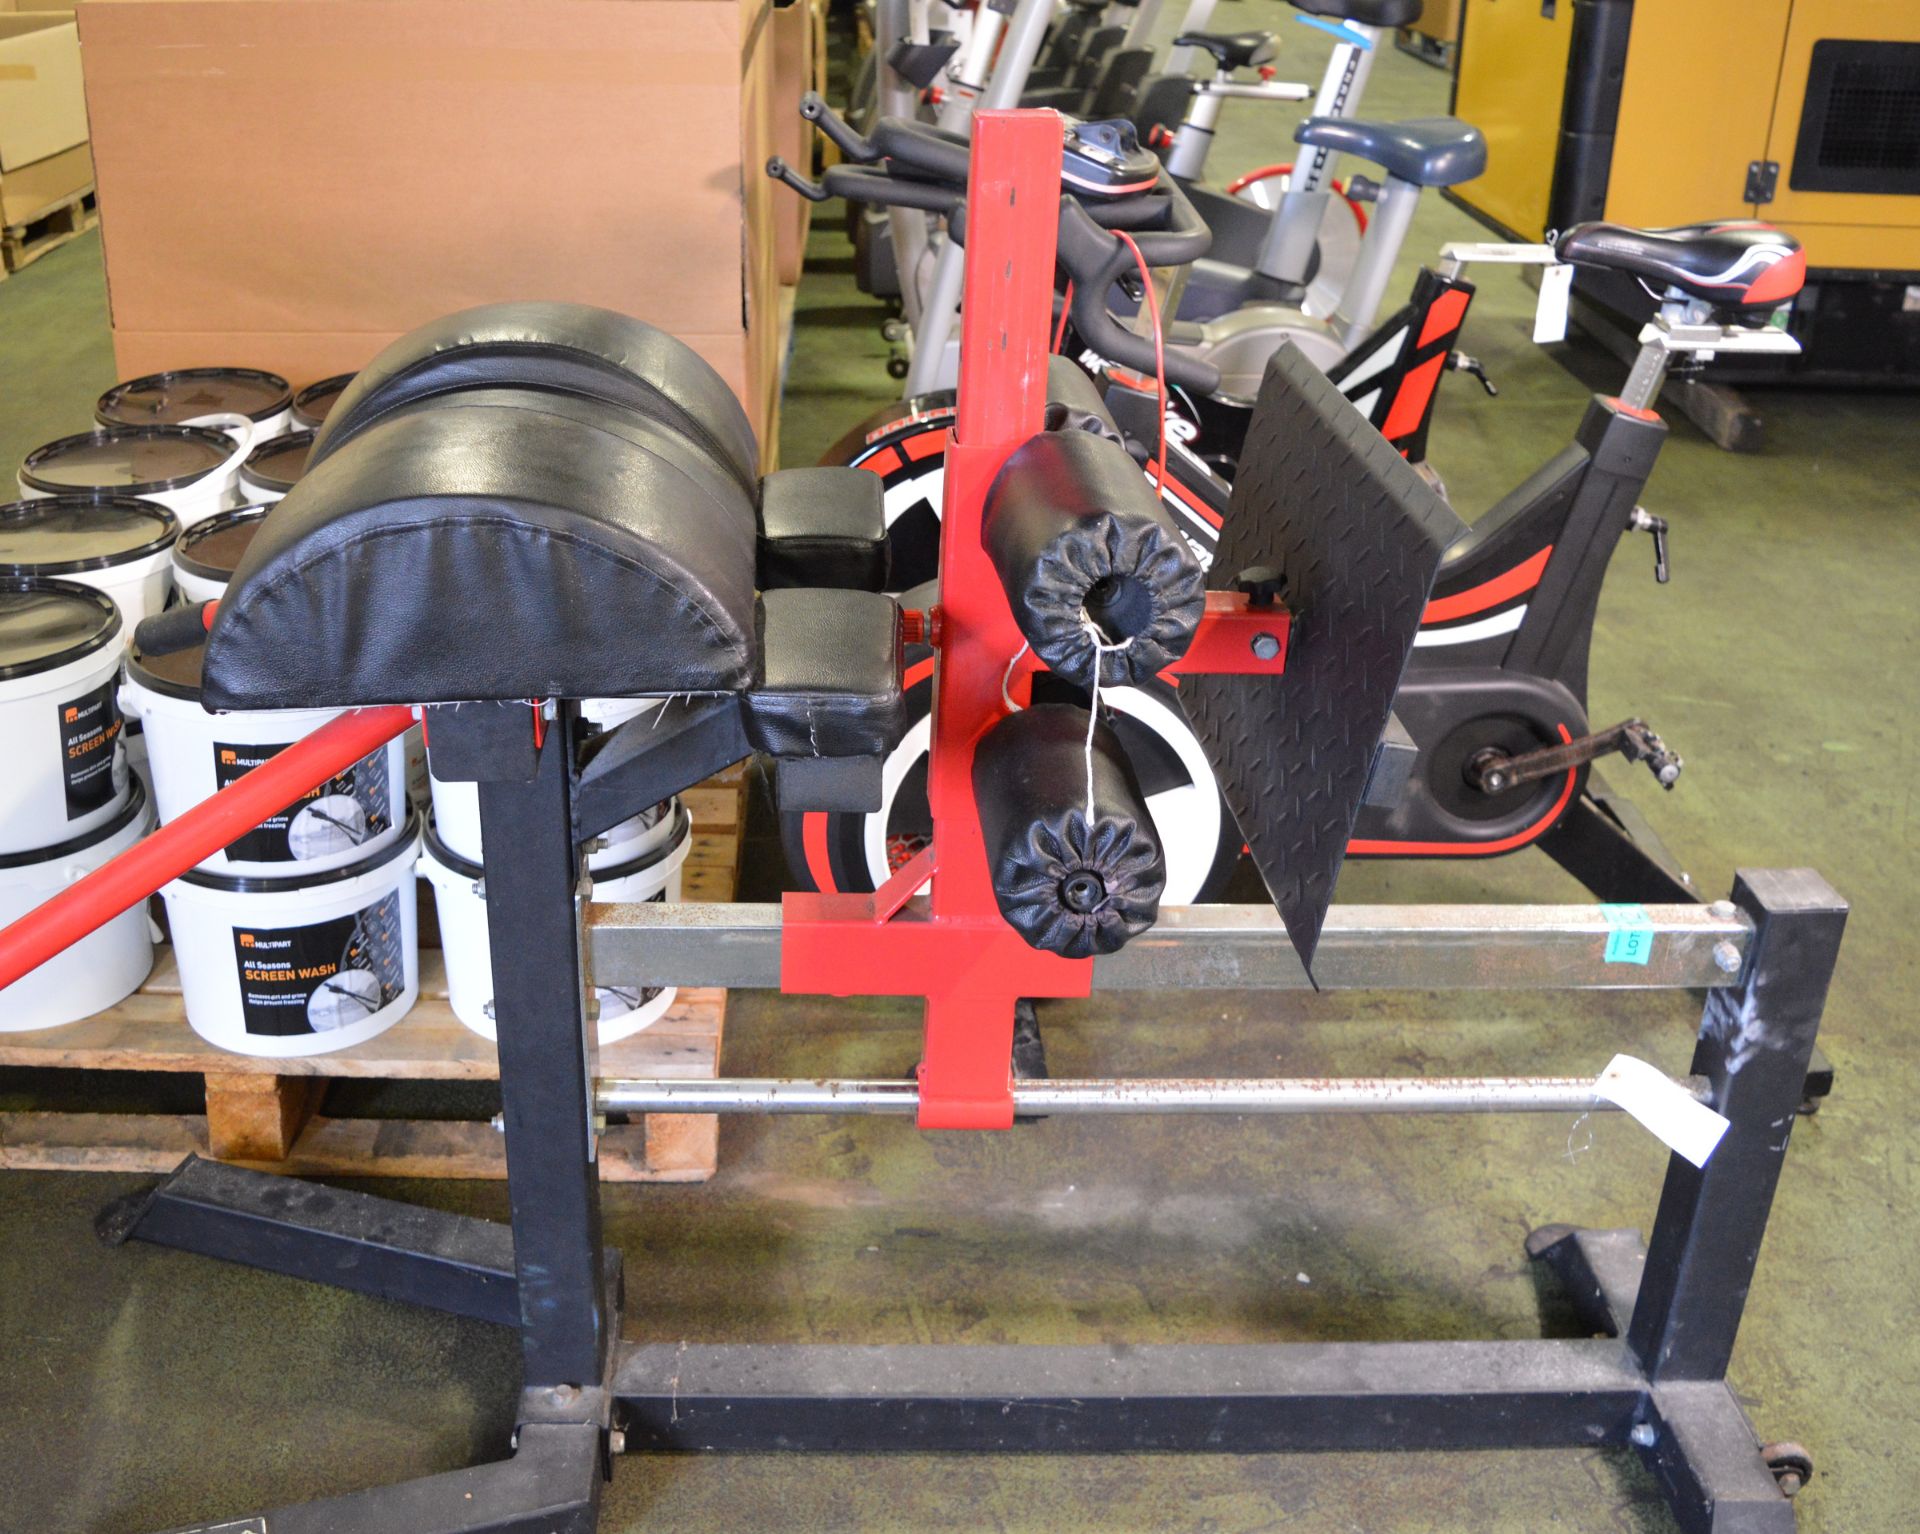 BodyMax leg exercise gym station - Image 2 of 6